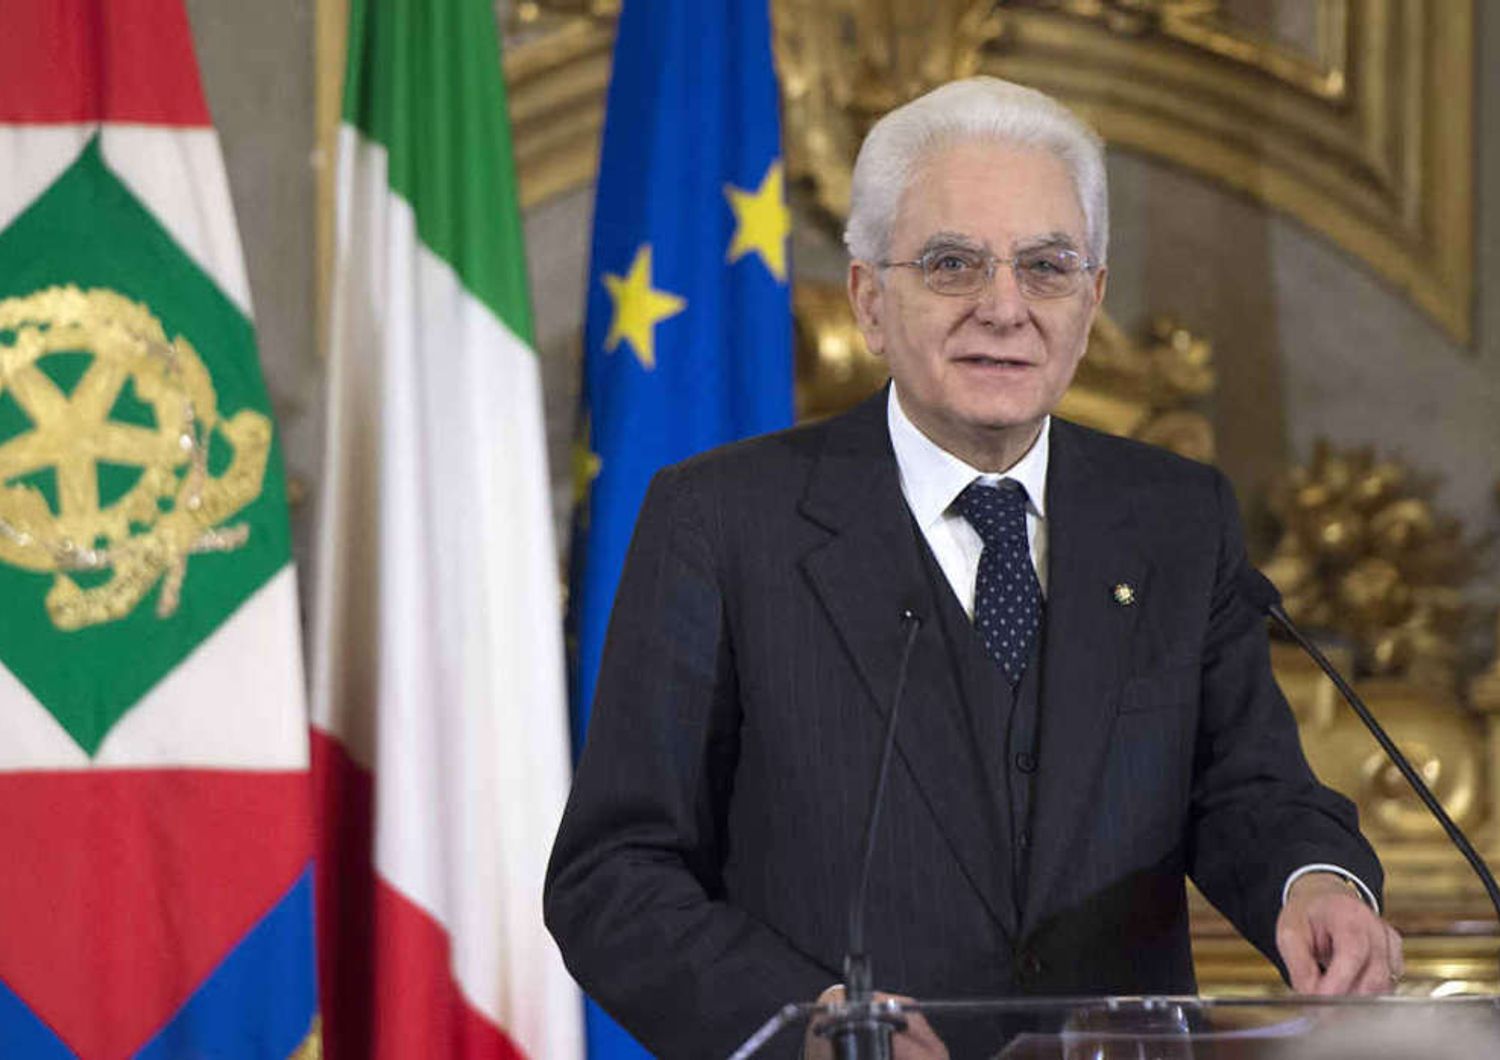 Mattarella: responsabilita' toghe 'Nuova legge non vi condizioni'